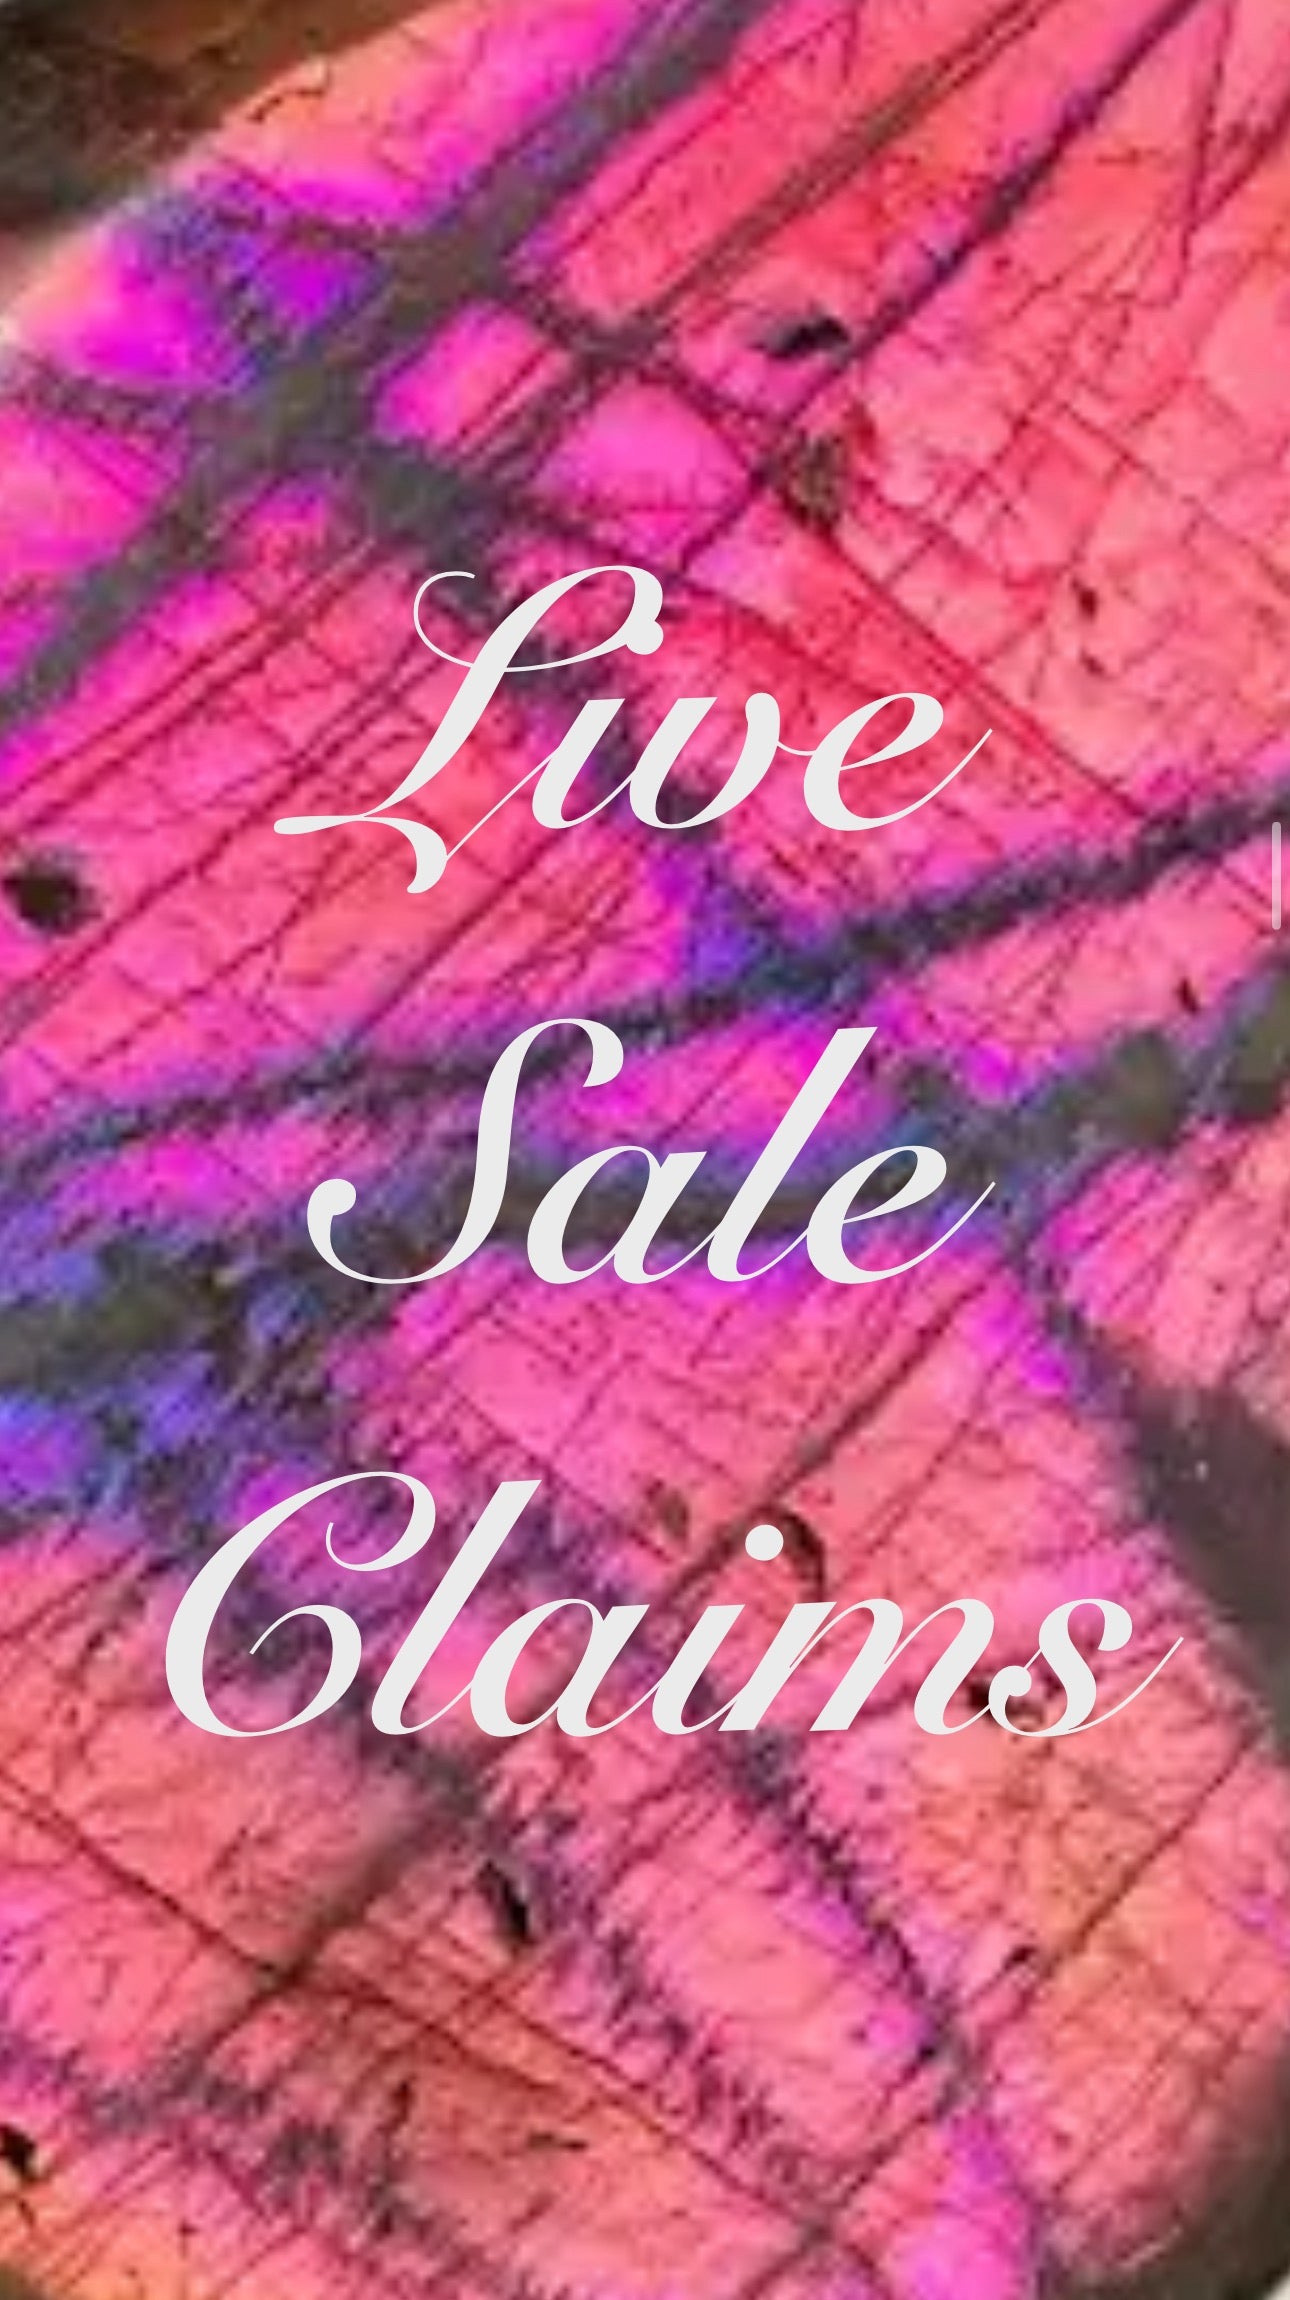 A Live Sale Claim